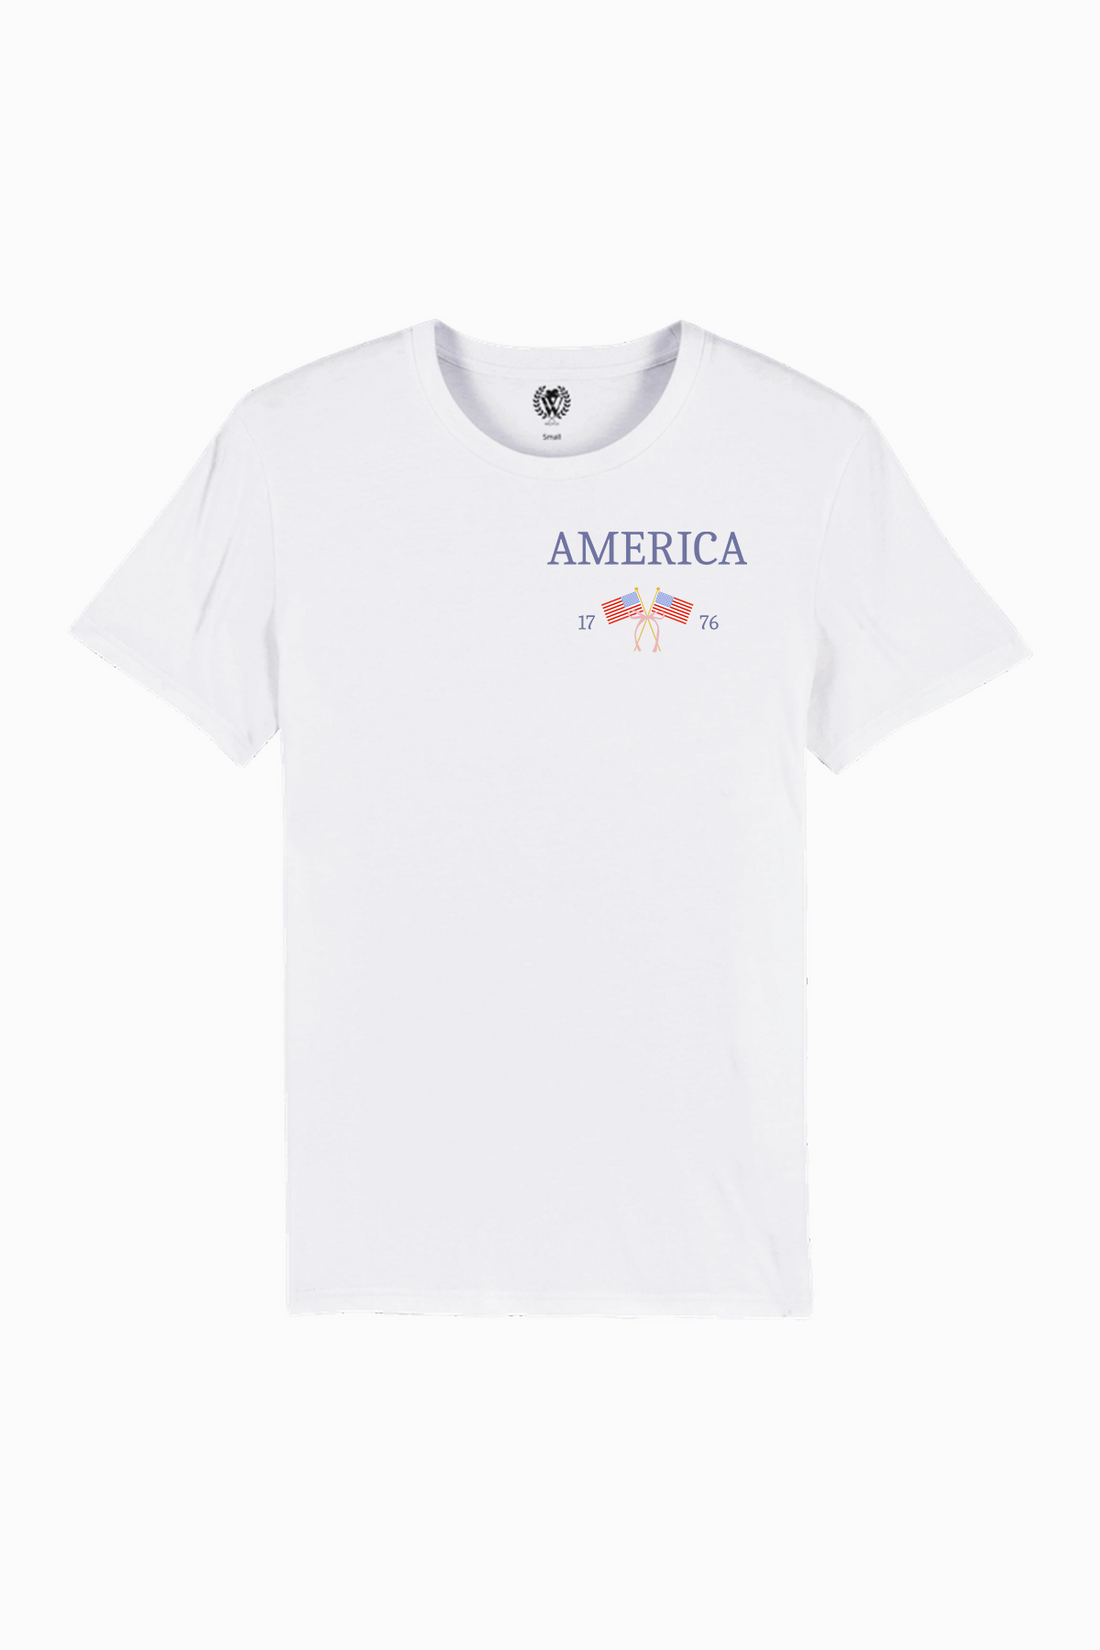 America 1776 | Organic White